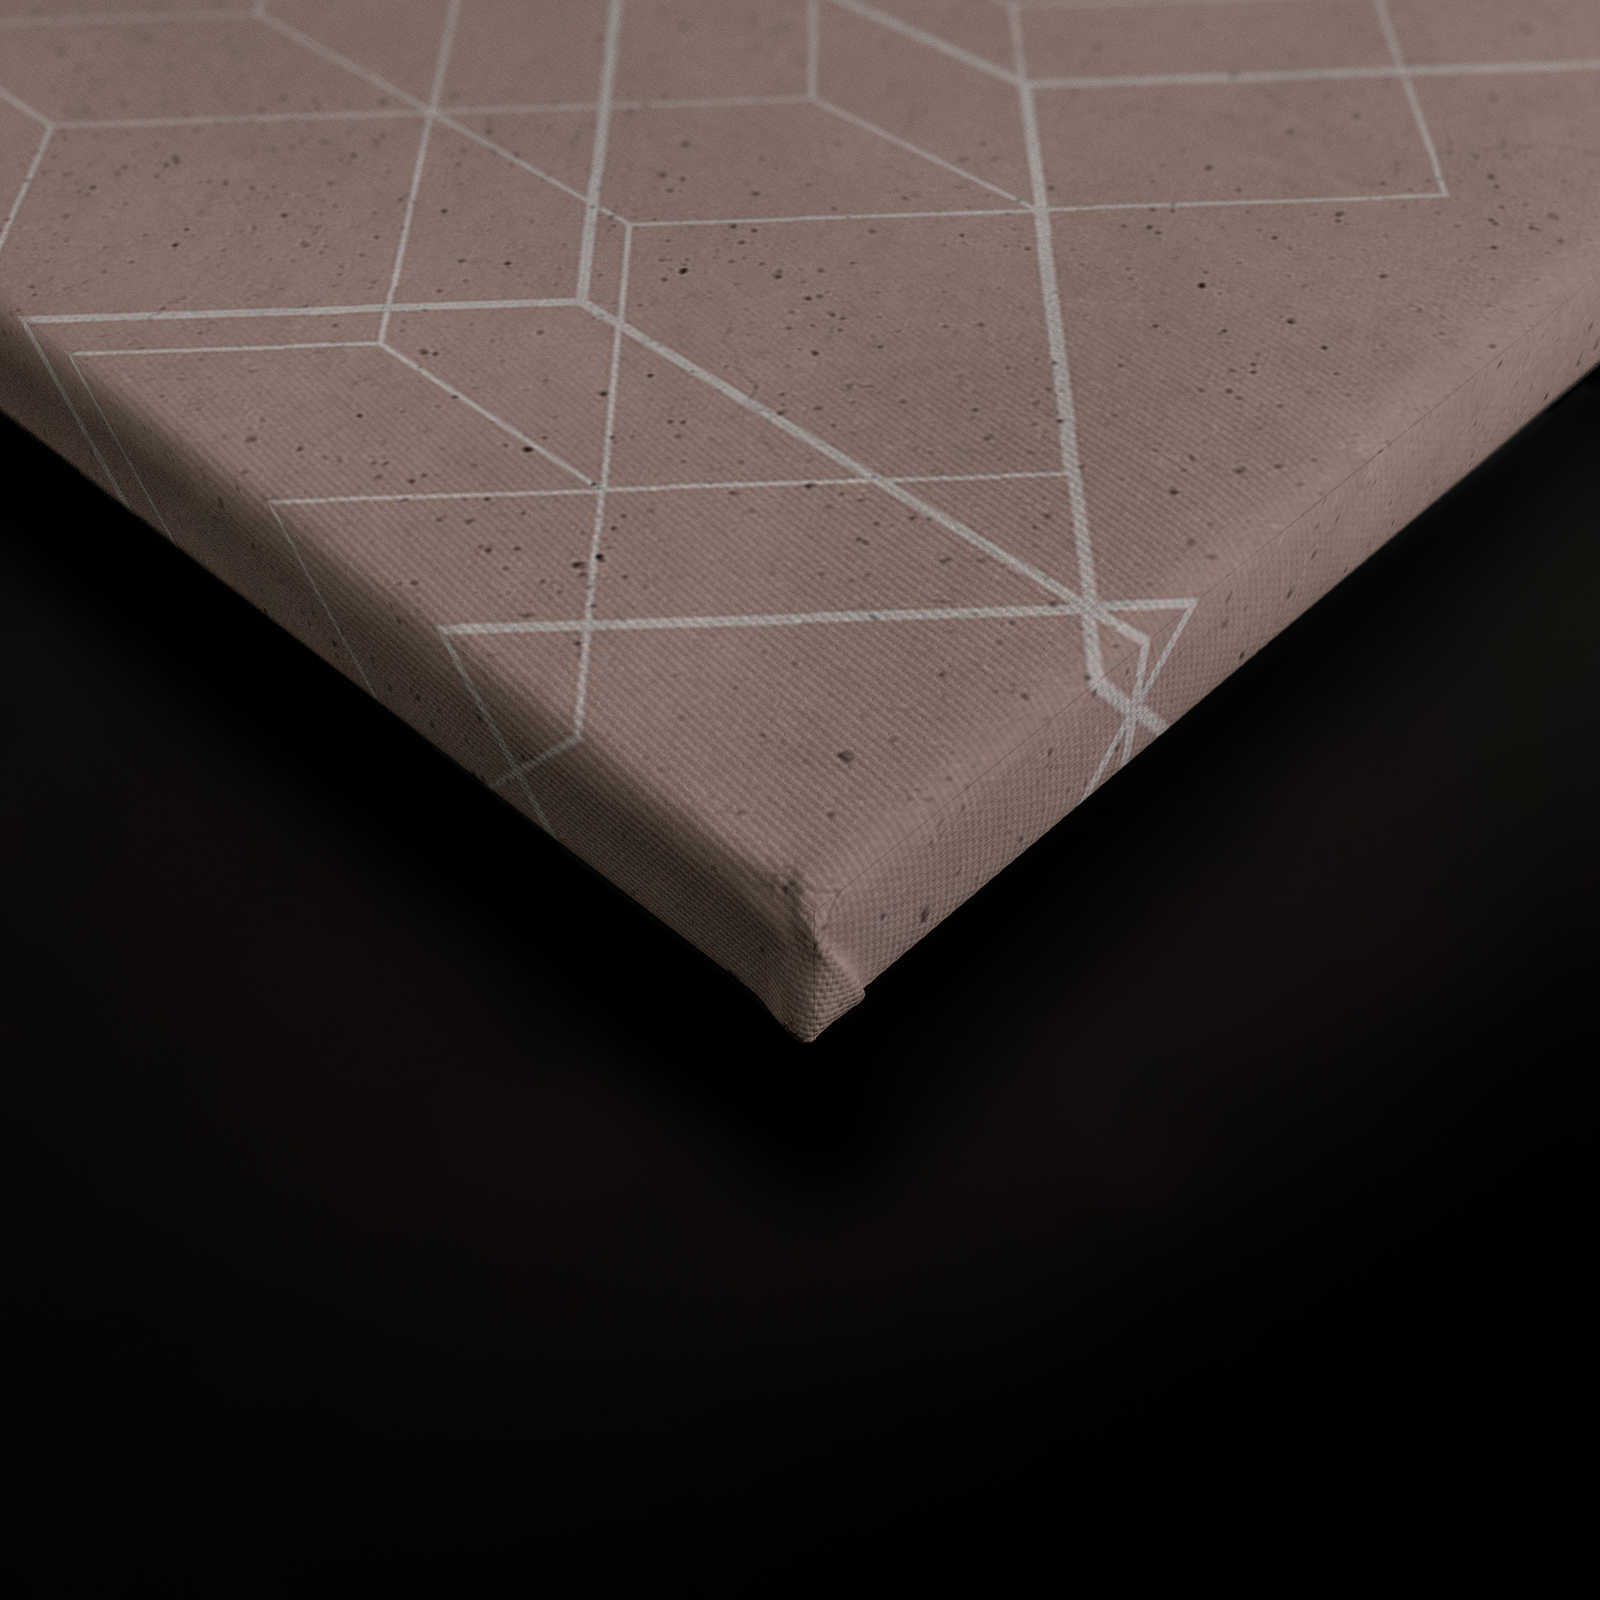             Cuadro lienzo motivo geométrico | beige, blanco - 0,90 m x 0,60 m
        